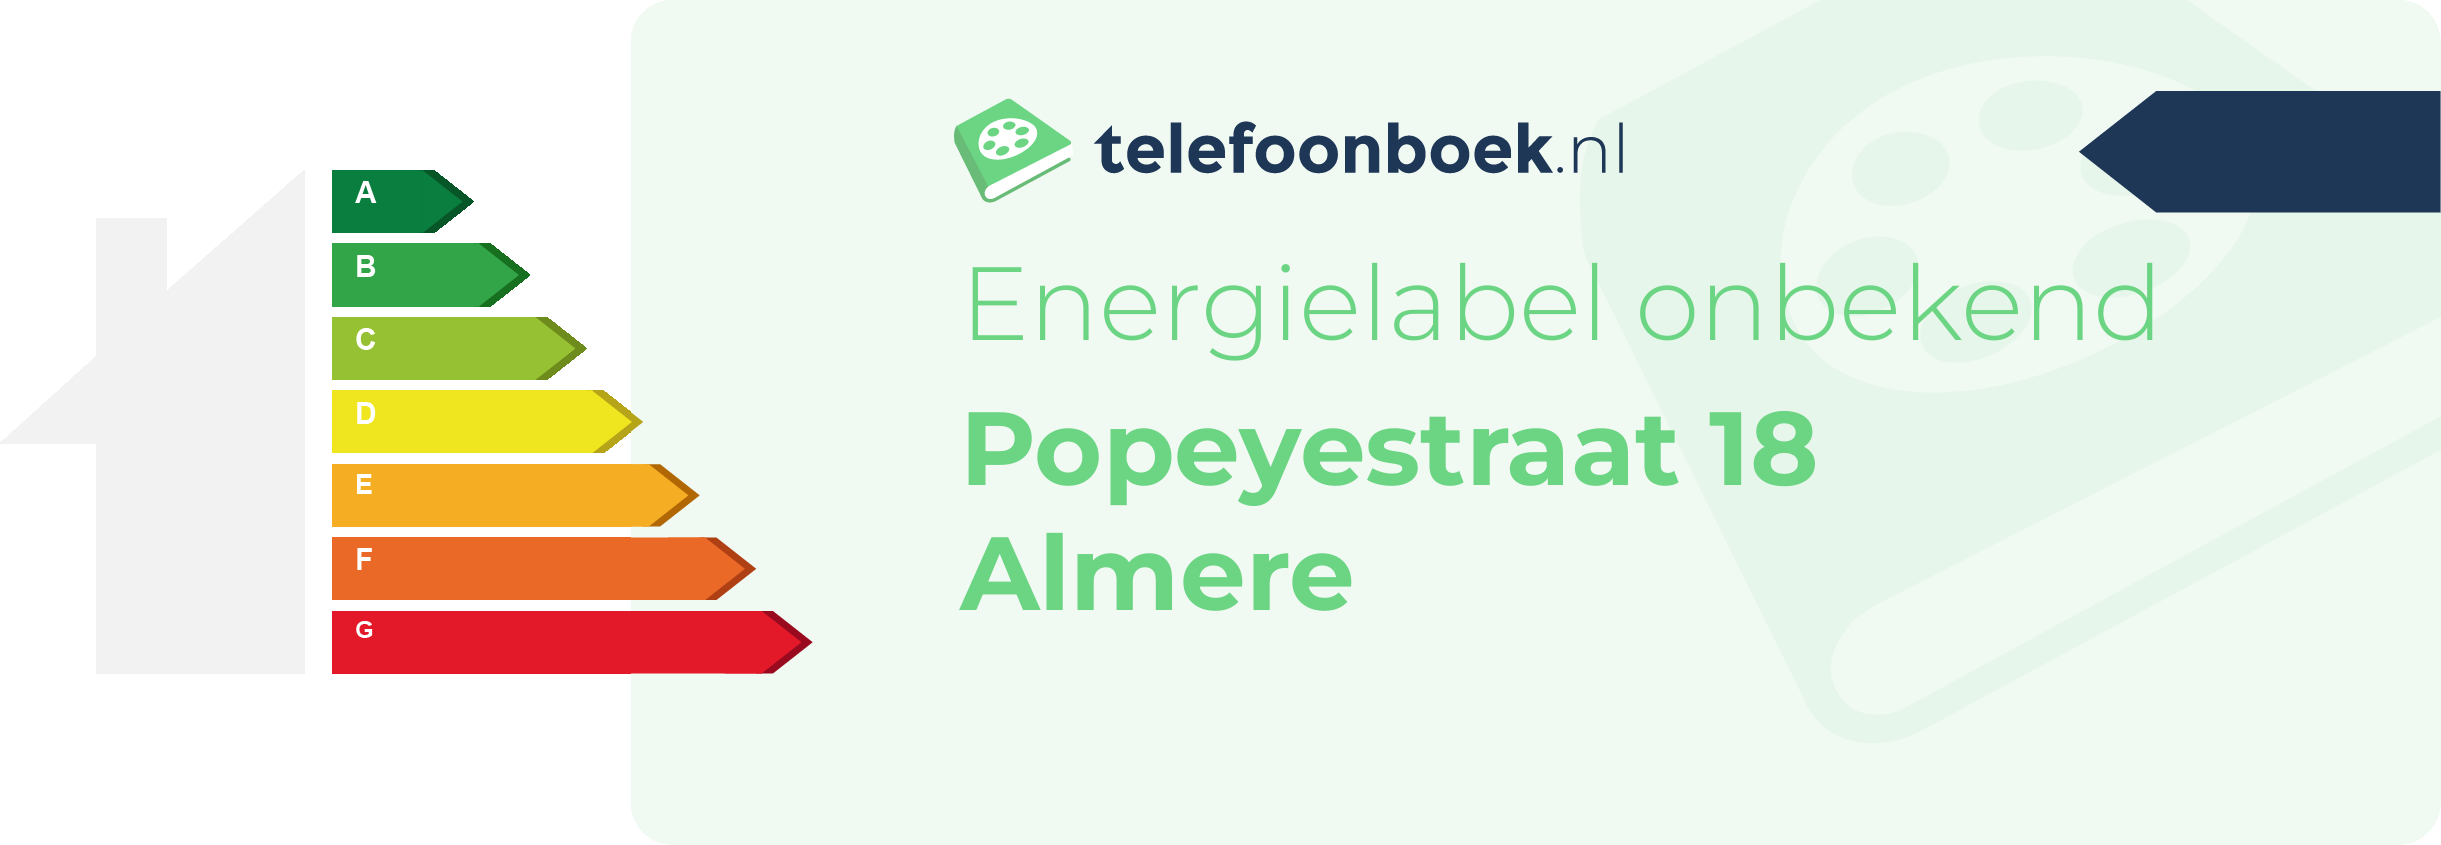 Energielabel Popeyestraat 18 Almere